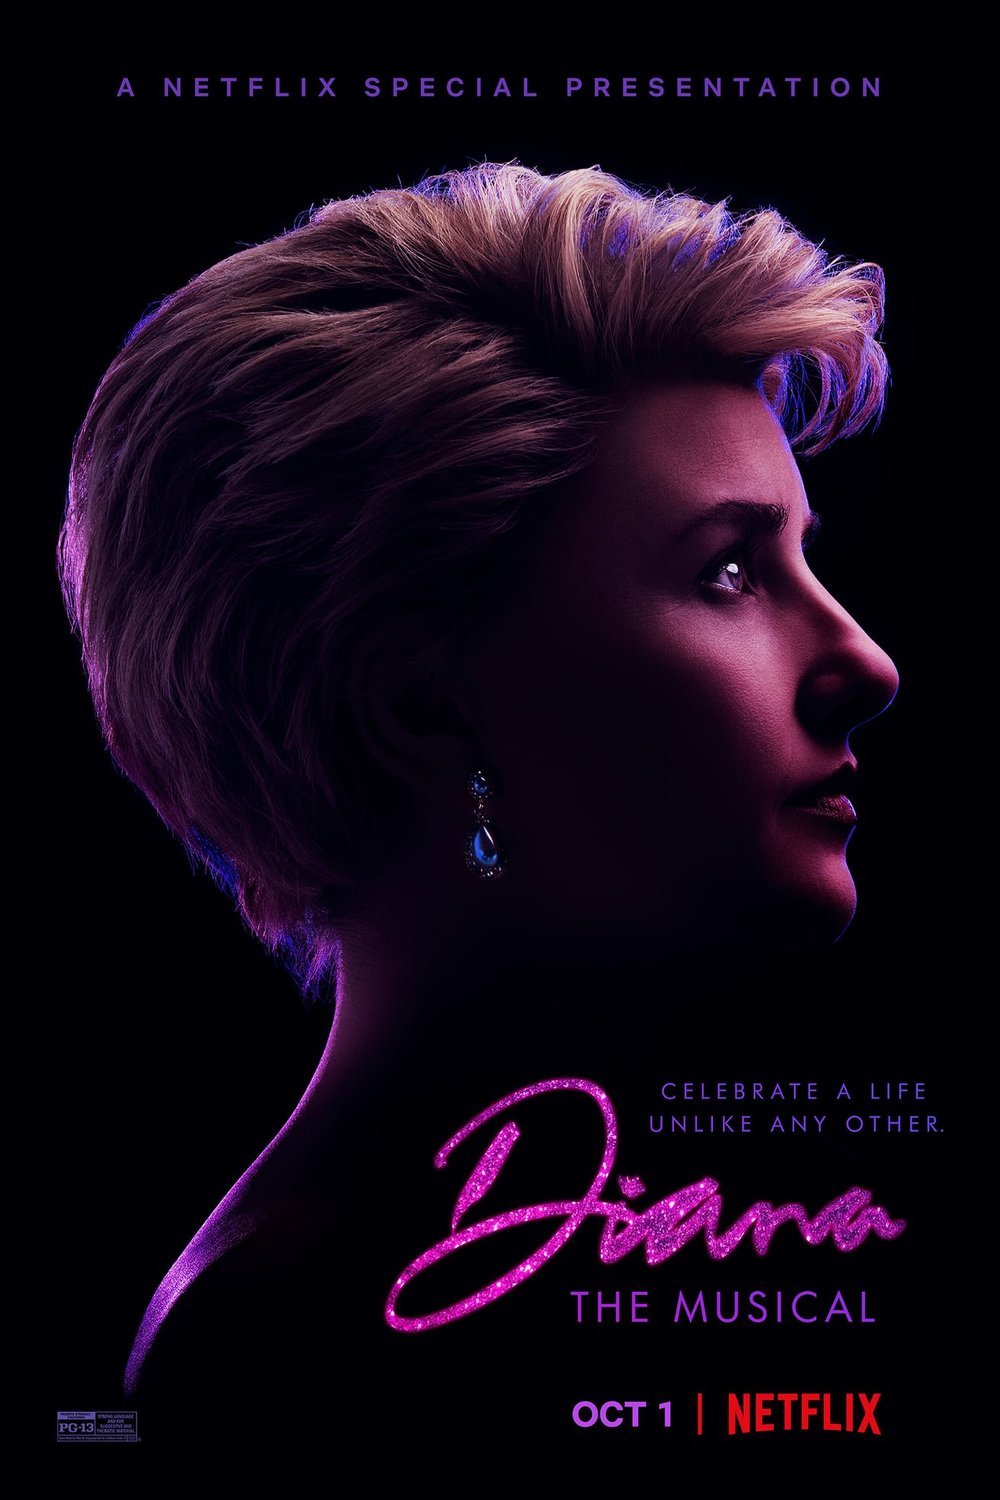 L'affiche du film Diana